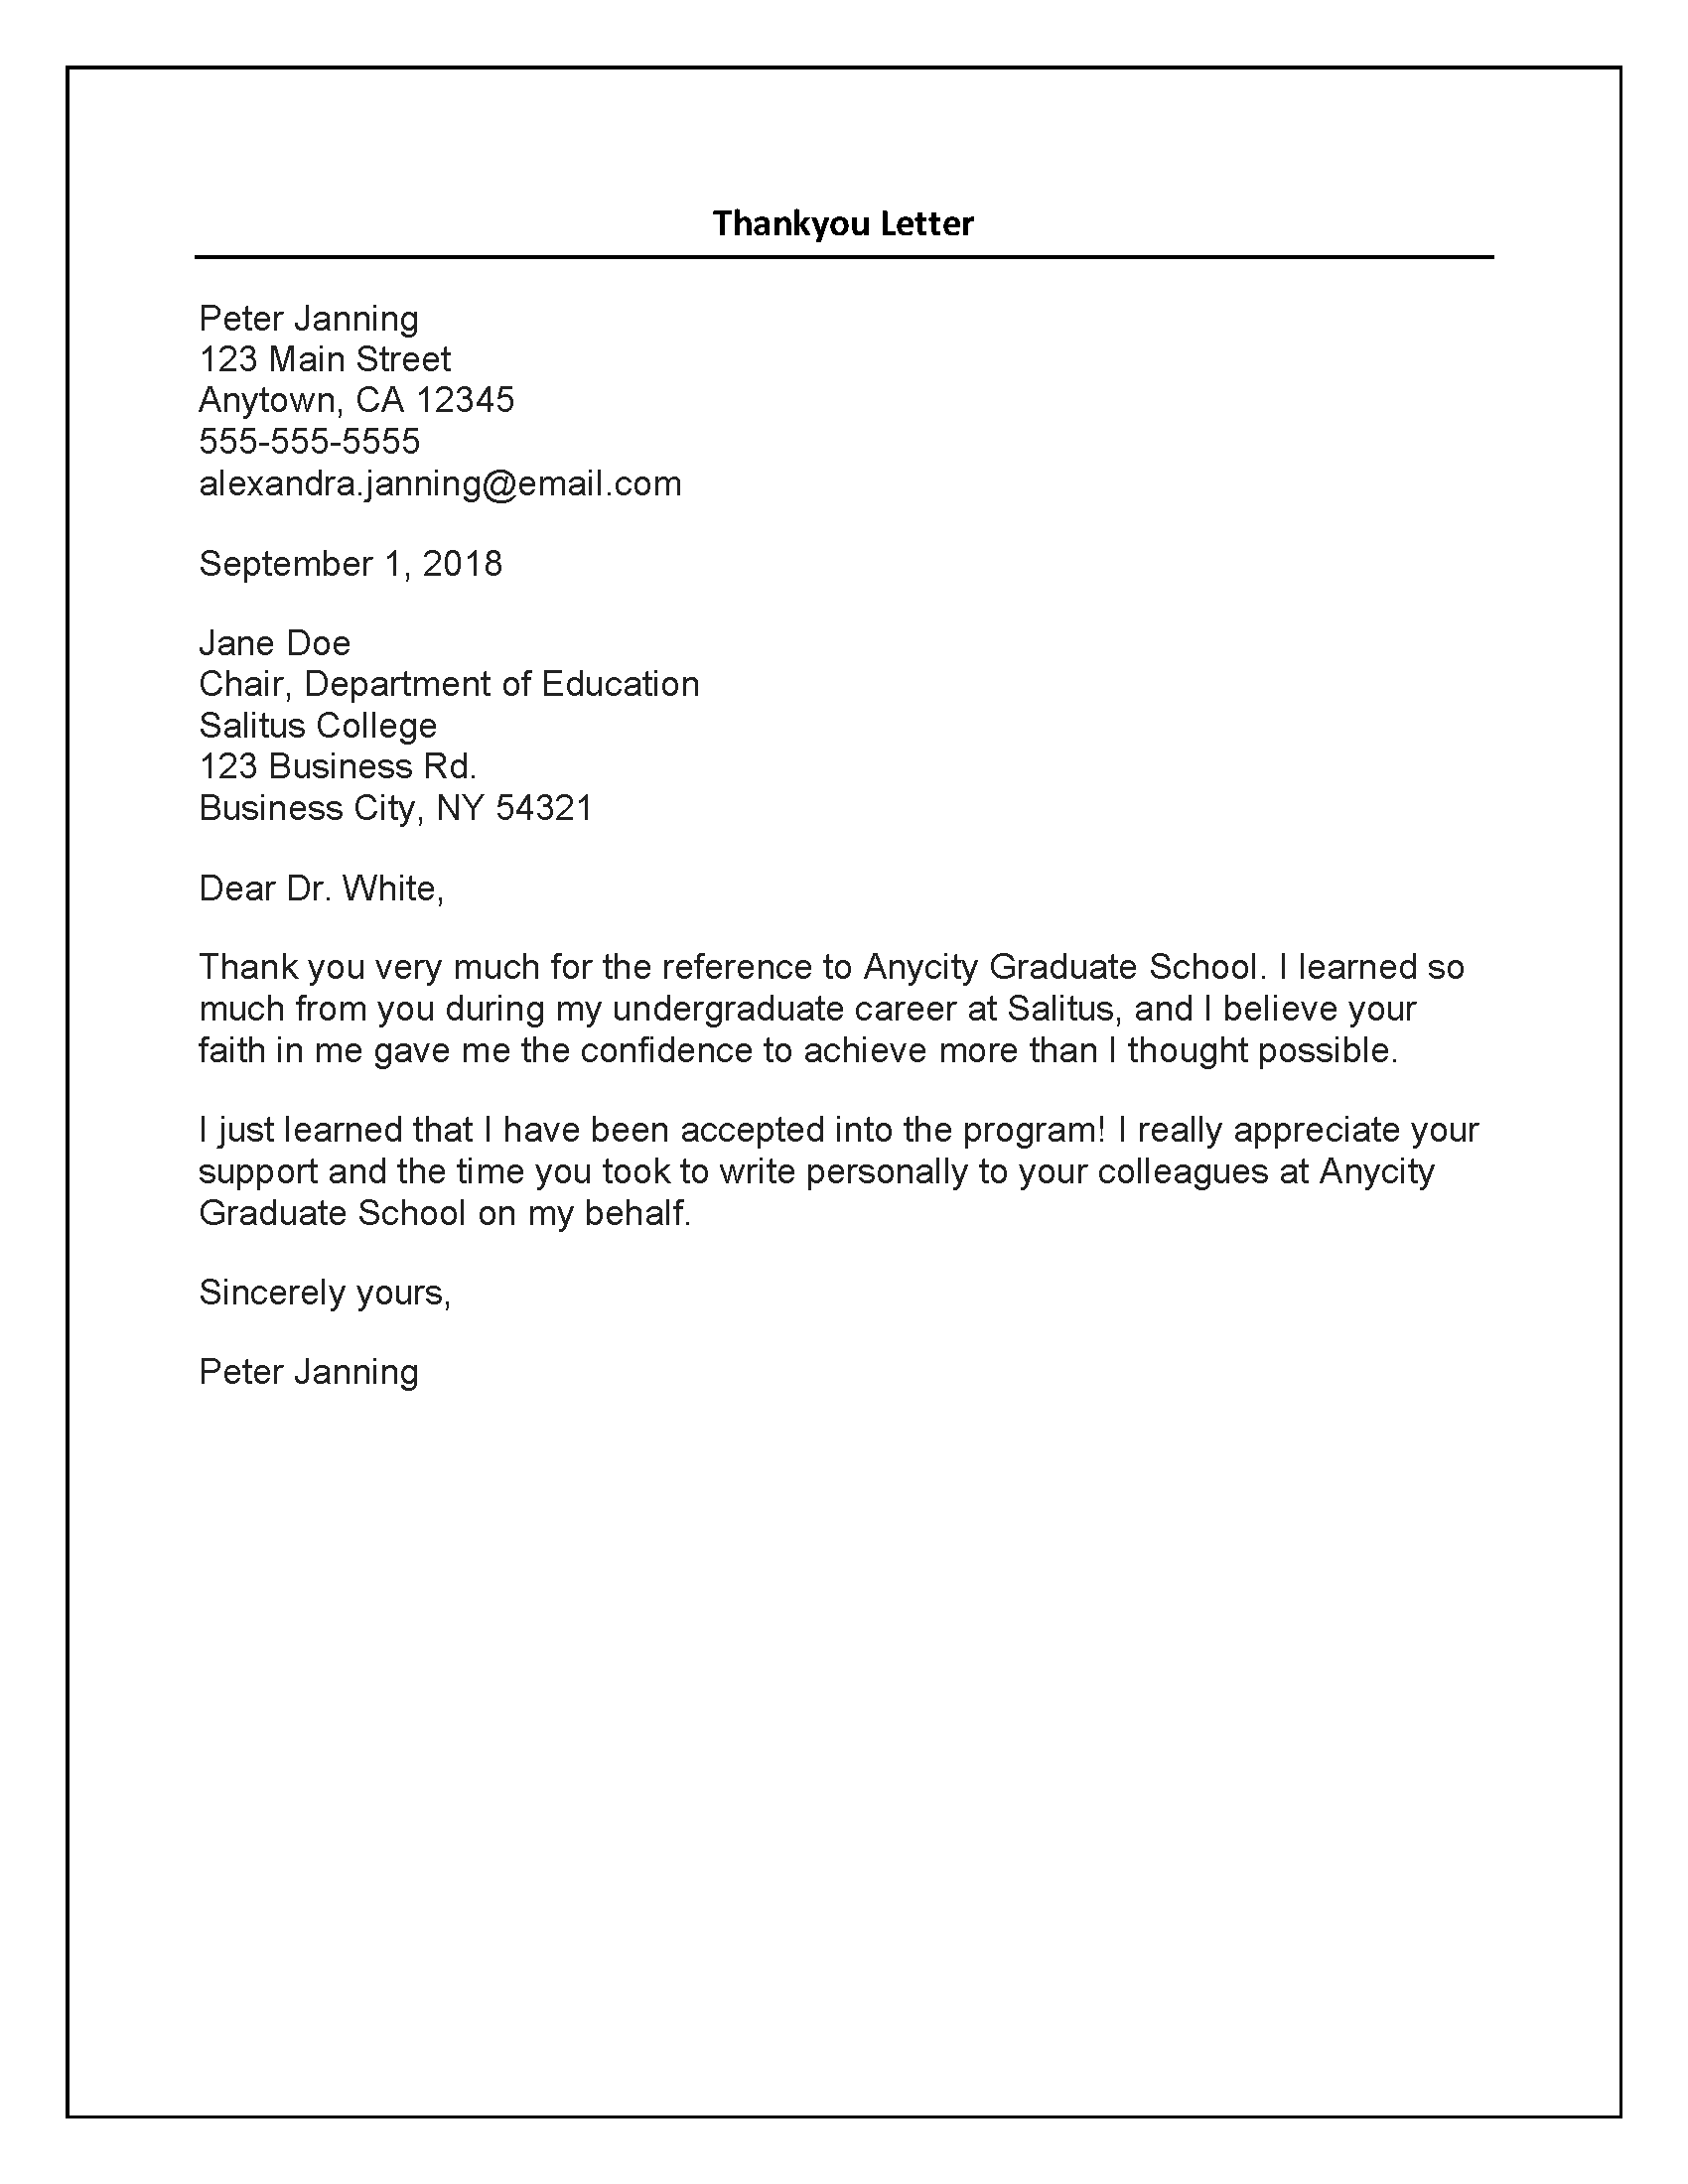 Sample Recommendation Letter For Professor